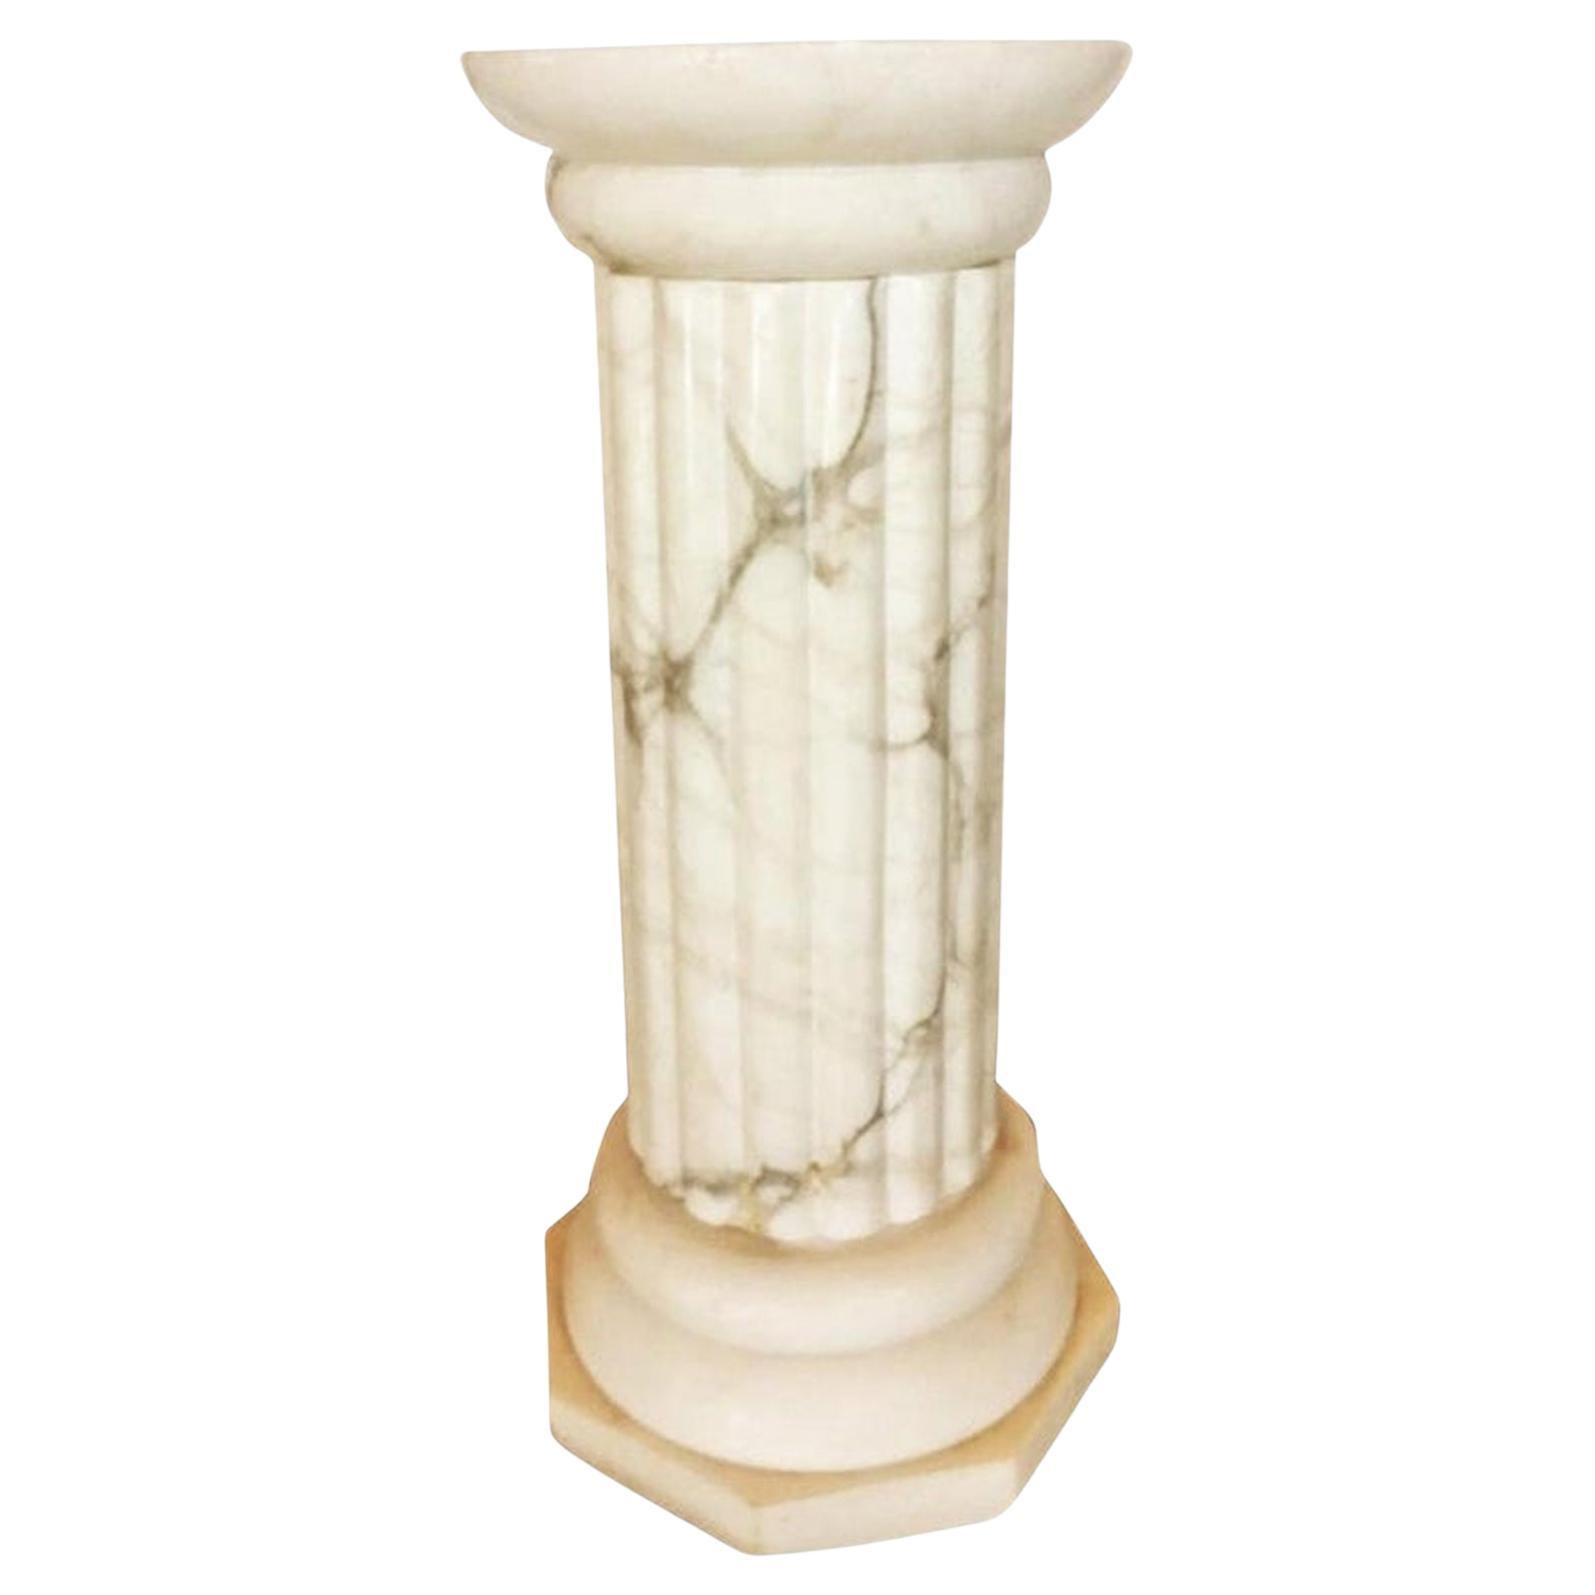 Lampe Flor / Piédestal 
Albâtre très bien conservé, sans taches ni changements de couleur
 
Lampe à fleurs éclairée sur piédestal  Forme de col grecque en marbre blanc et albâtre, Italie

Lampadaire italien en albâtre blanc sculpté avec éclairage